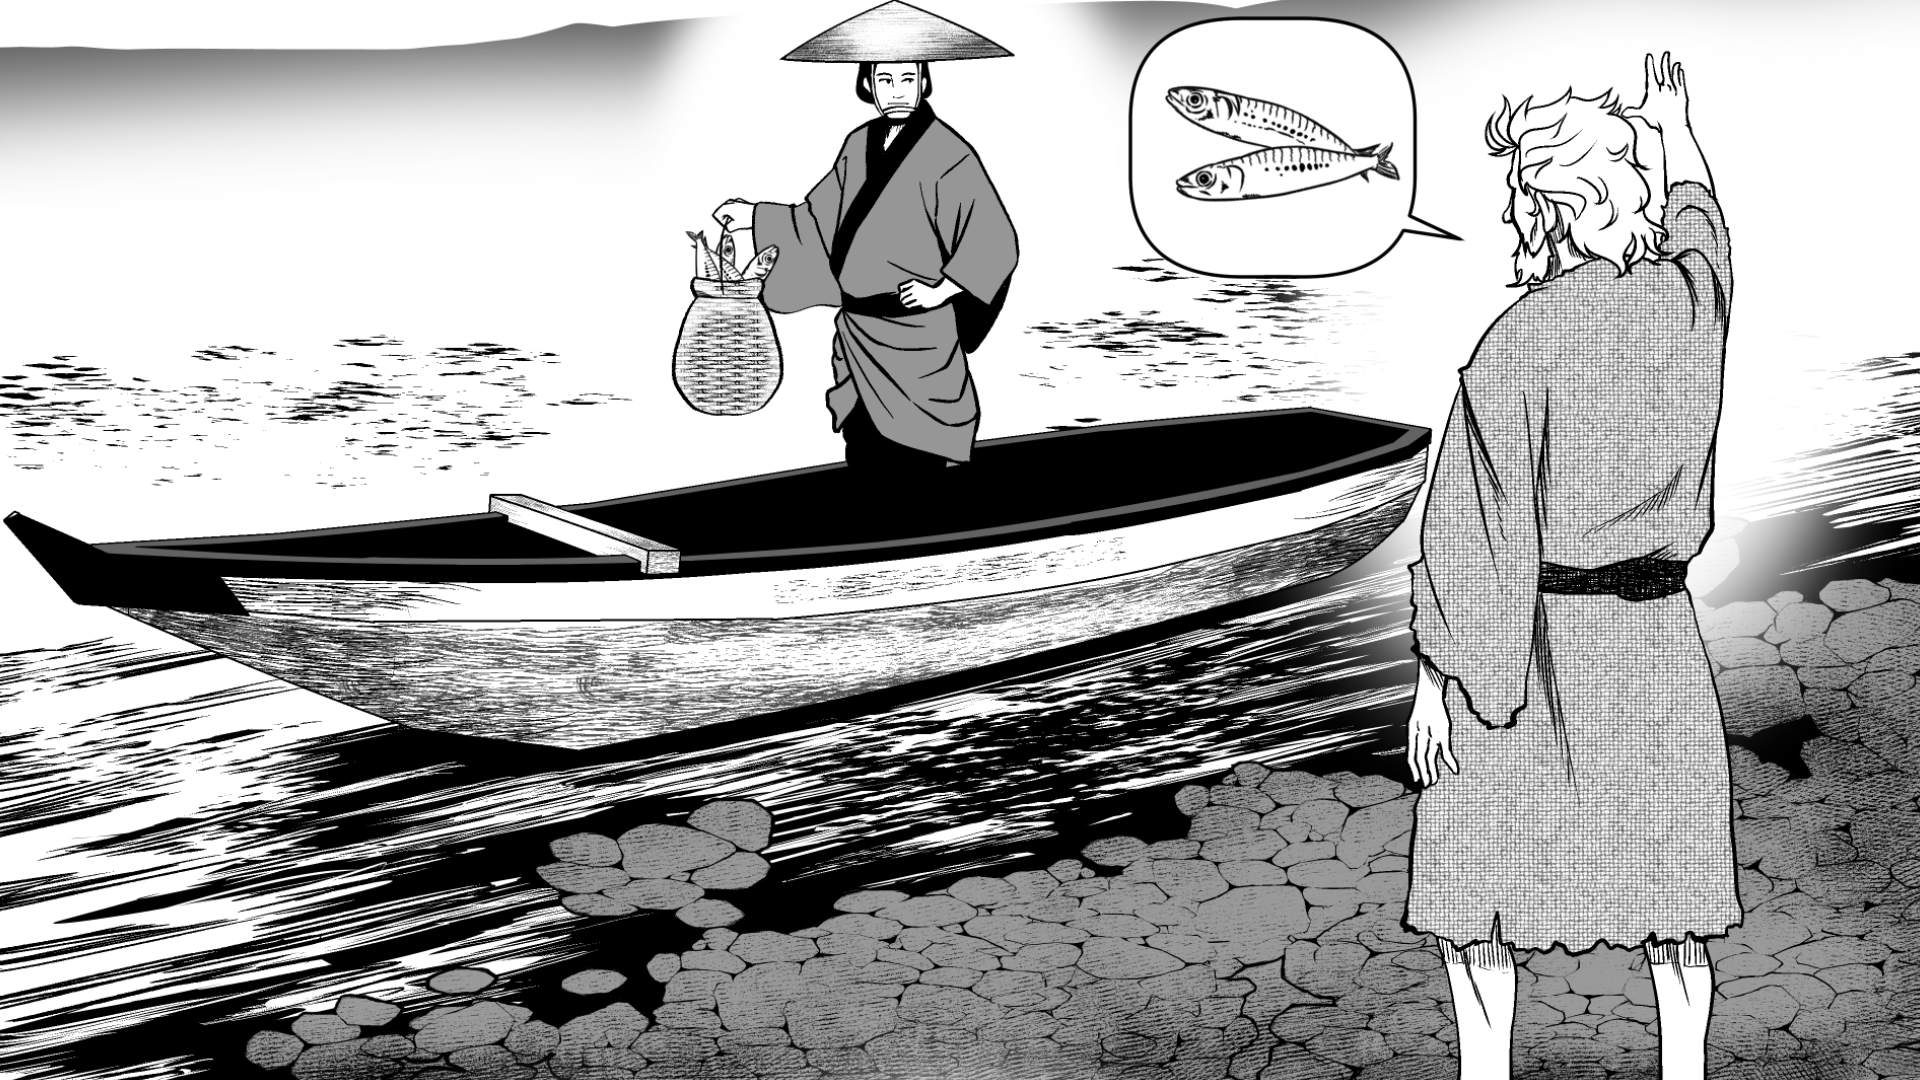 A Folktale of Ferryman Seiji